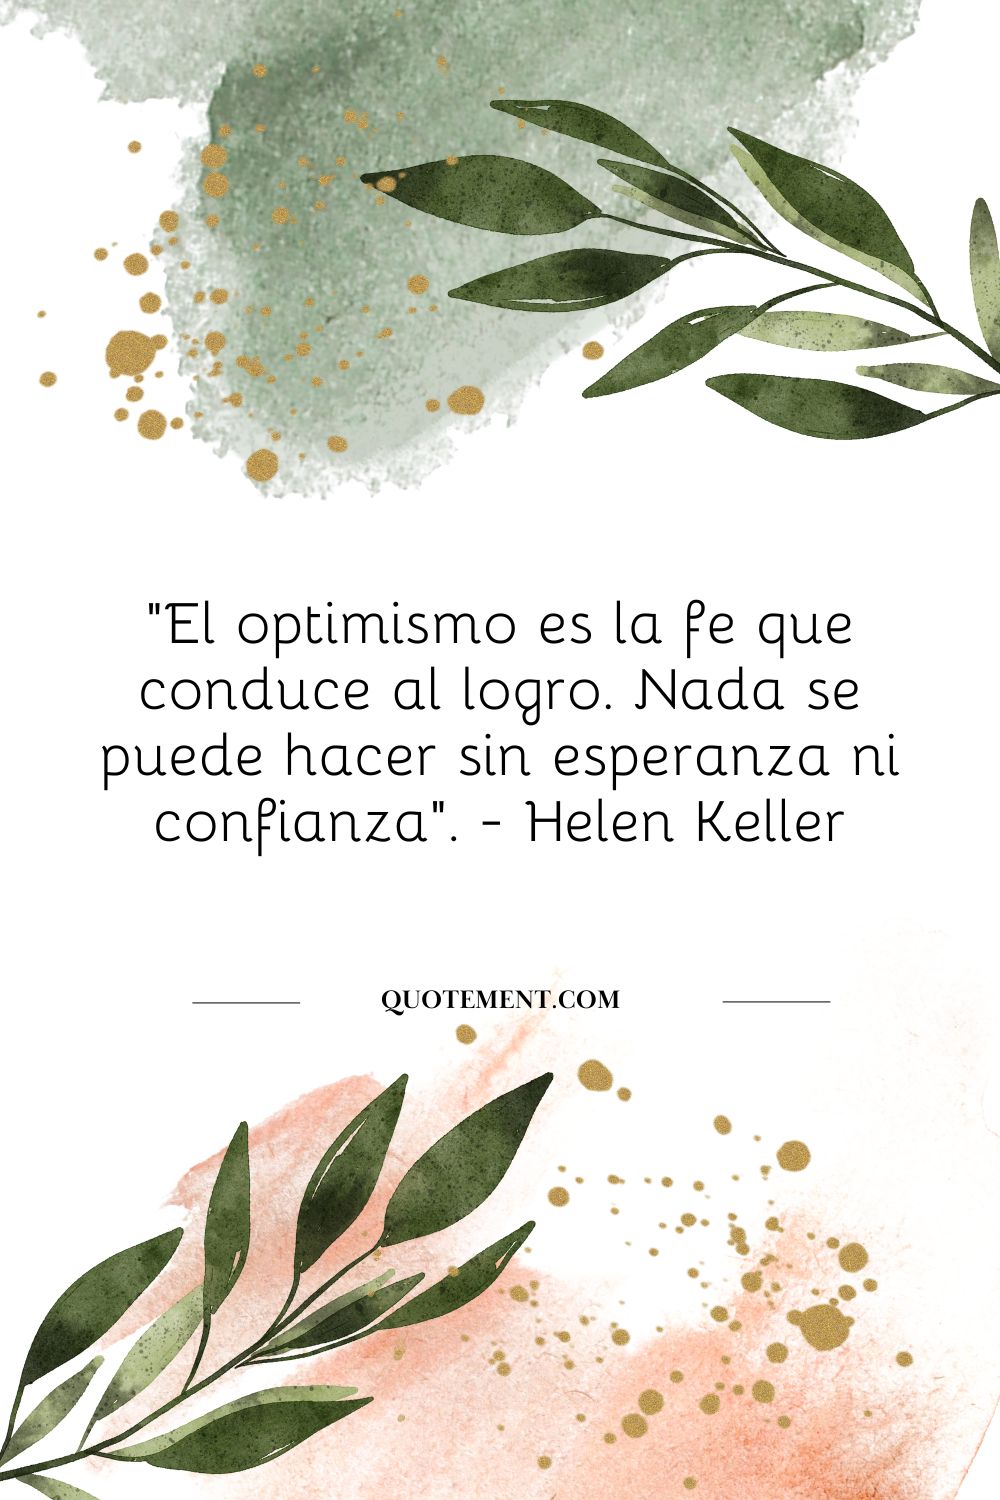 "El optimismo es la fe que conduce al logro. Nada se puede hacer sin esperanza ni confianza". - Helen Keller